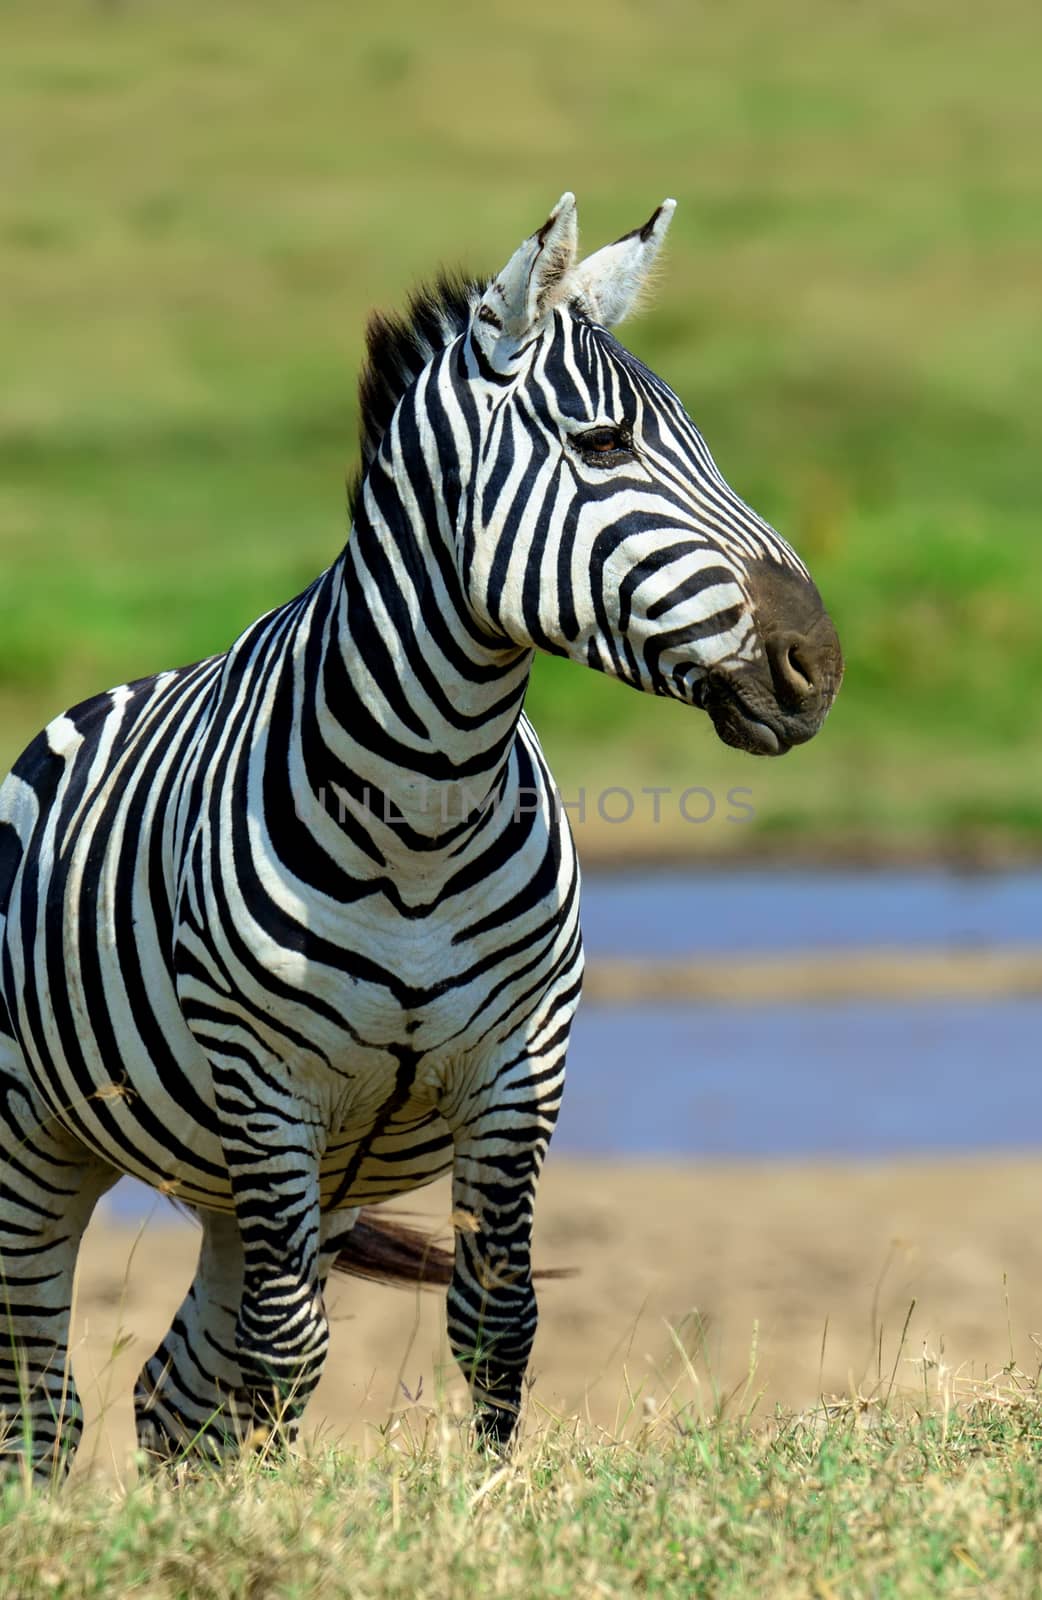 Zebra in National park of Kenya by byrdyak